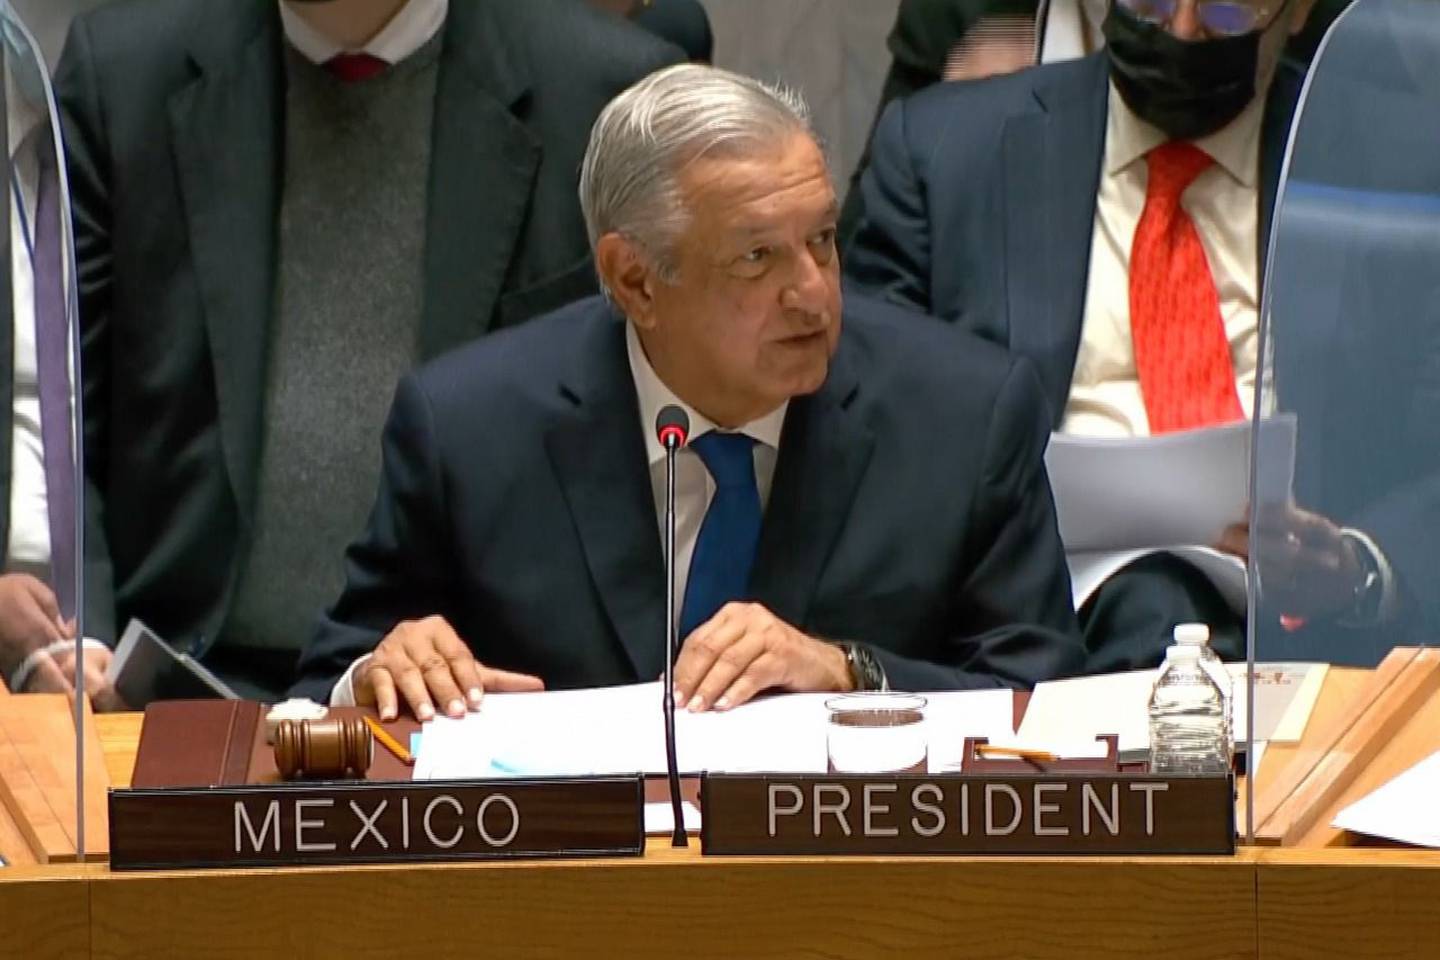 El presidente de México dijo que la corrupción es responsable de la pobreza, desigualdad y migración en el mundo.